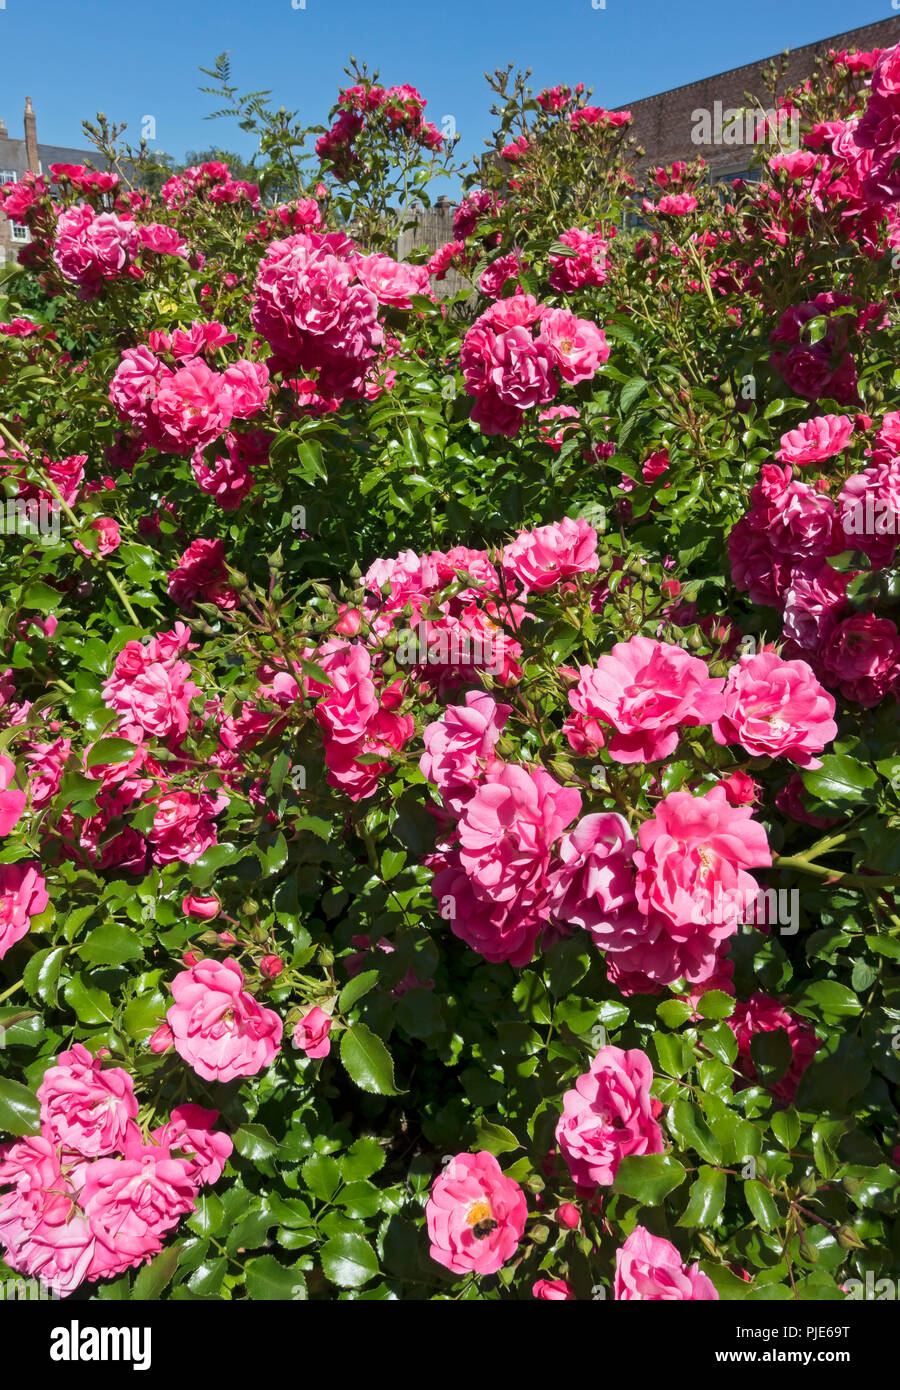 Nahaufnahme von rosa Rosen Rosen „Rosa Blumenteppich“ Blumenblumen, die im Sommer in einem Garten blühen England Großbritannien Großbritannien Großbritannien Großbritannien Stockfoto